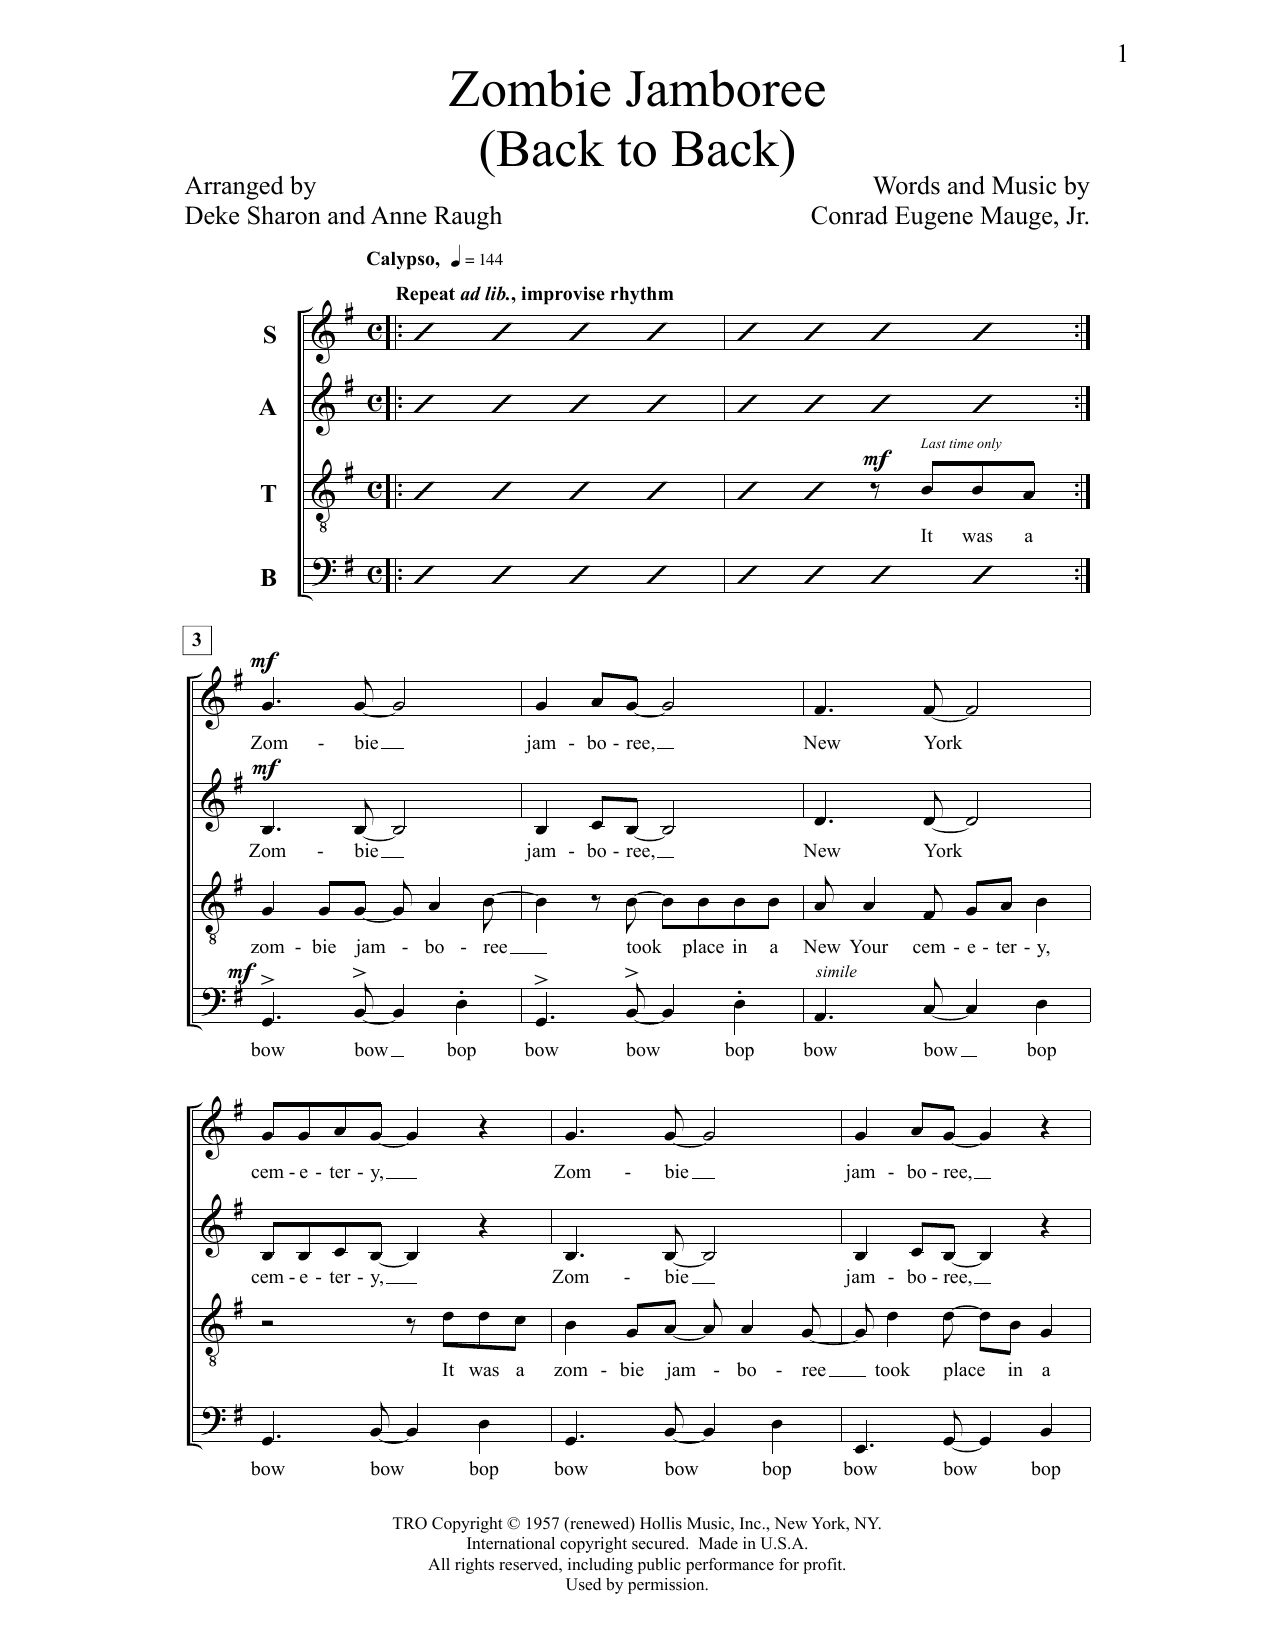 Deke Sharon Zombie Jamboree sheet music notes and chords. Download Printable PDF.